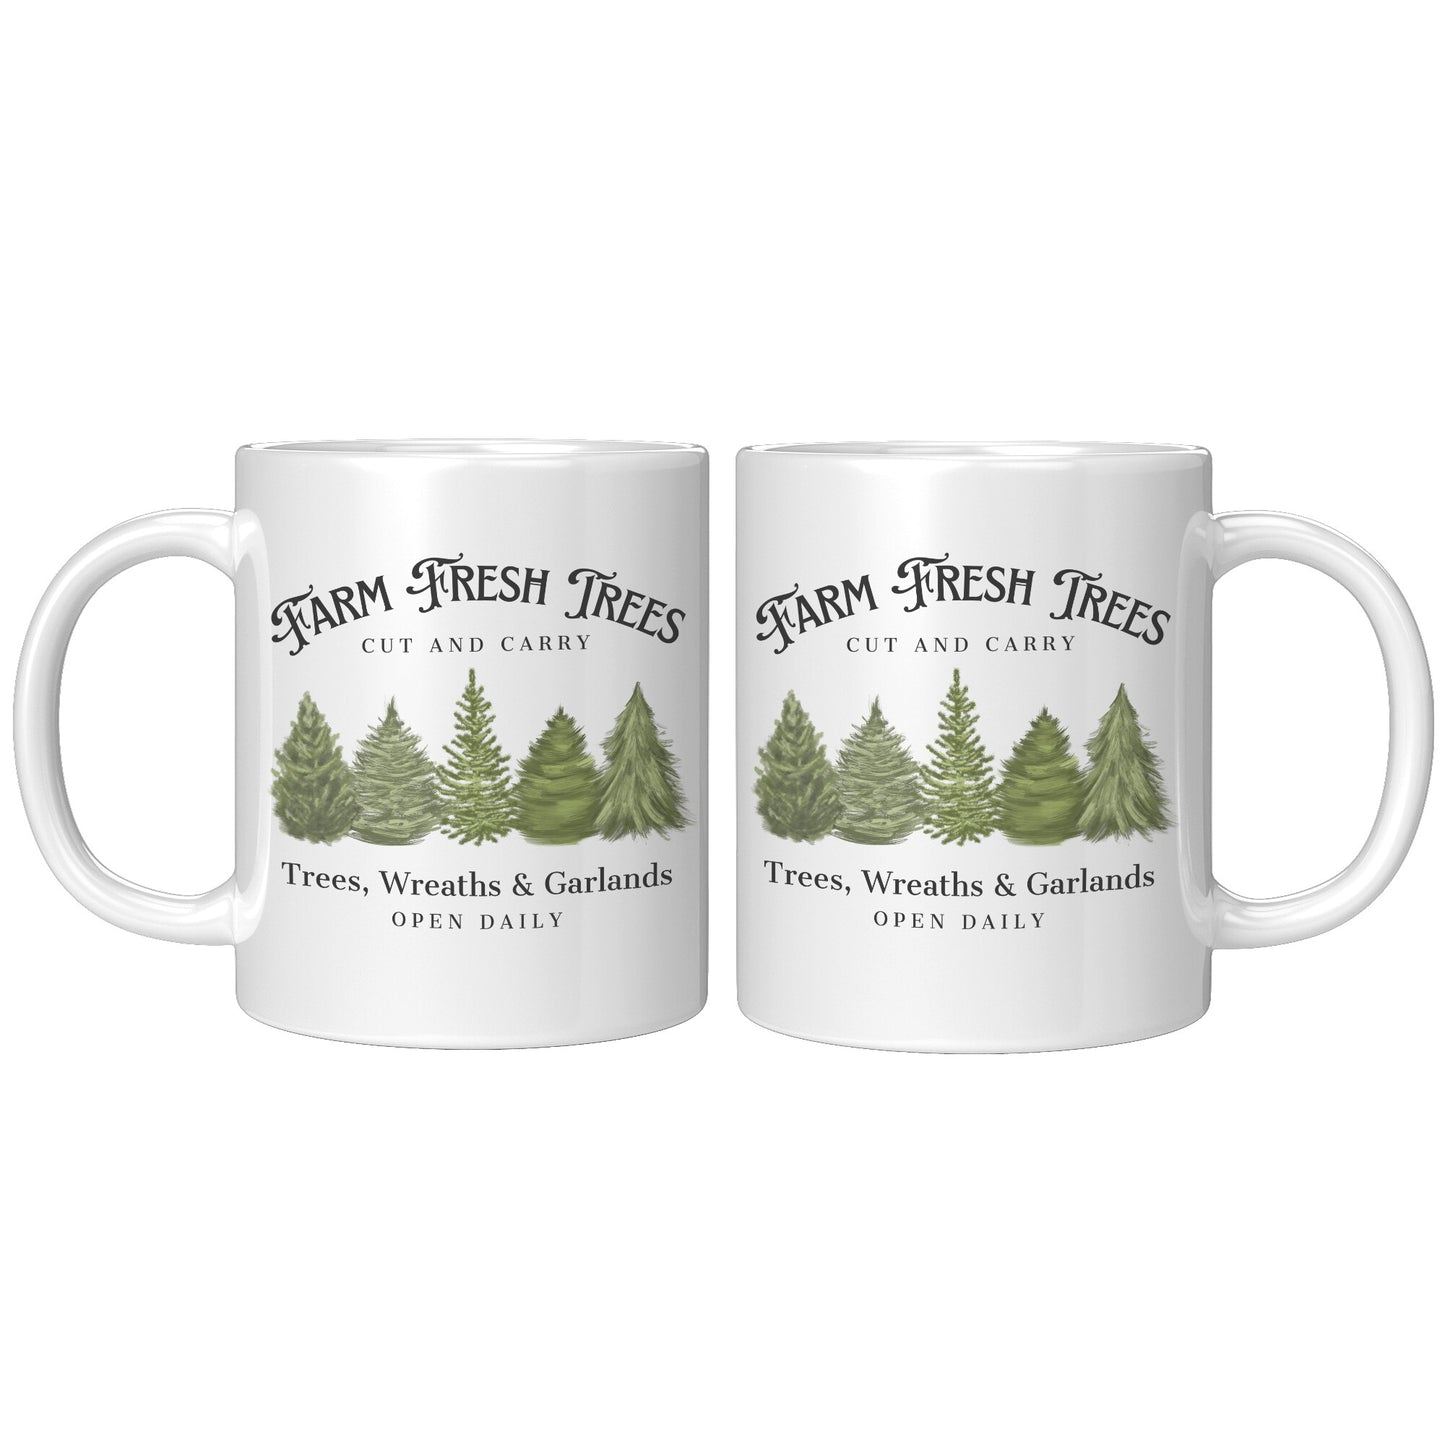 Farm Fresh Trees Mug